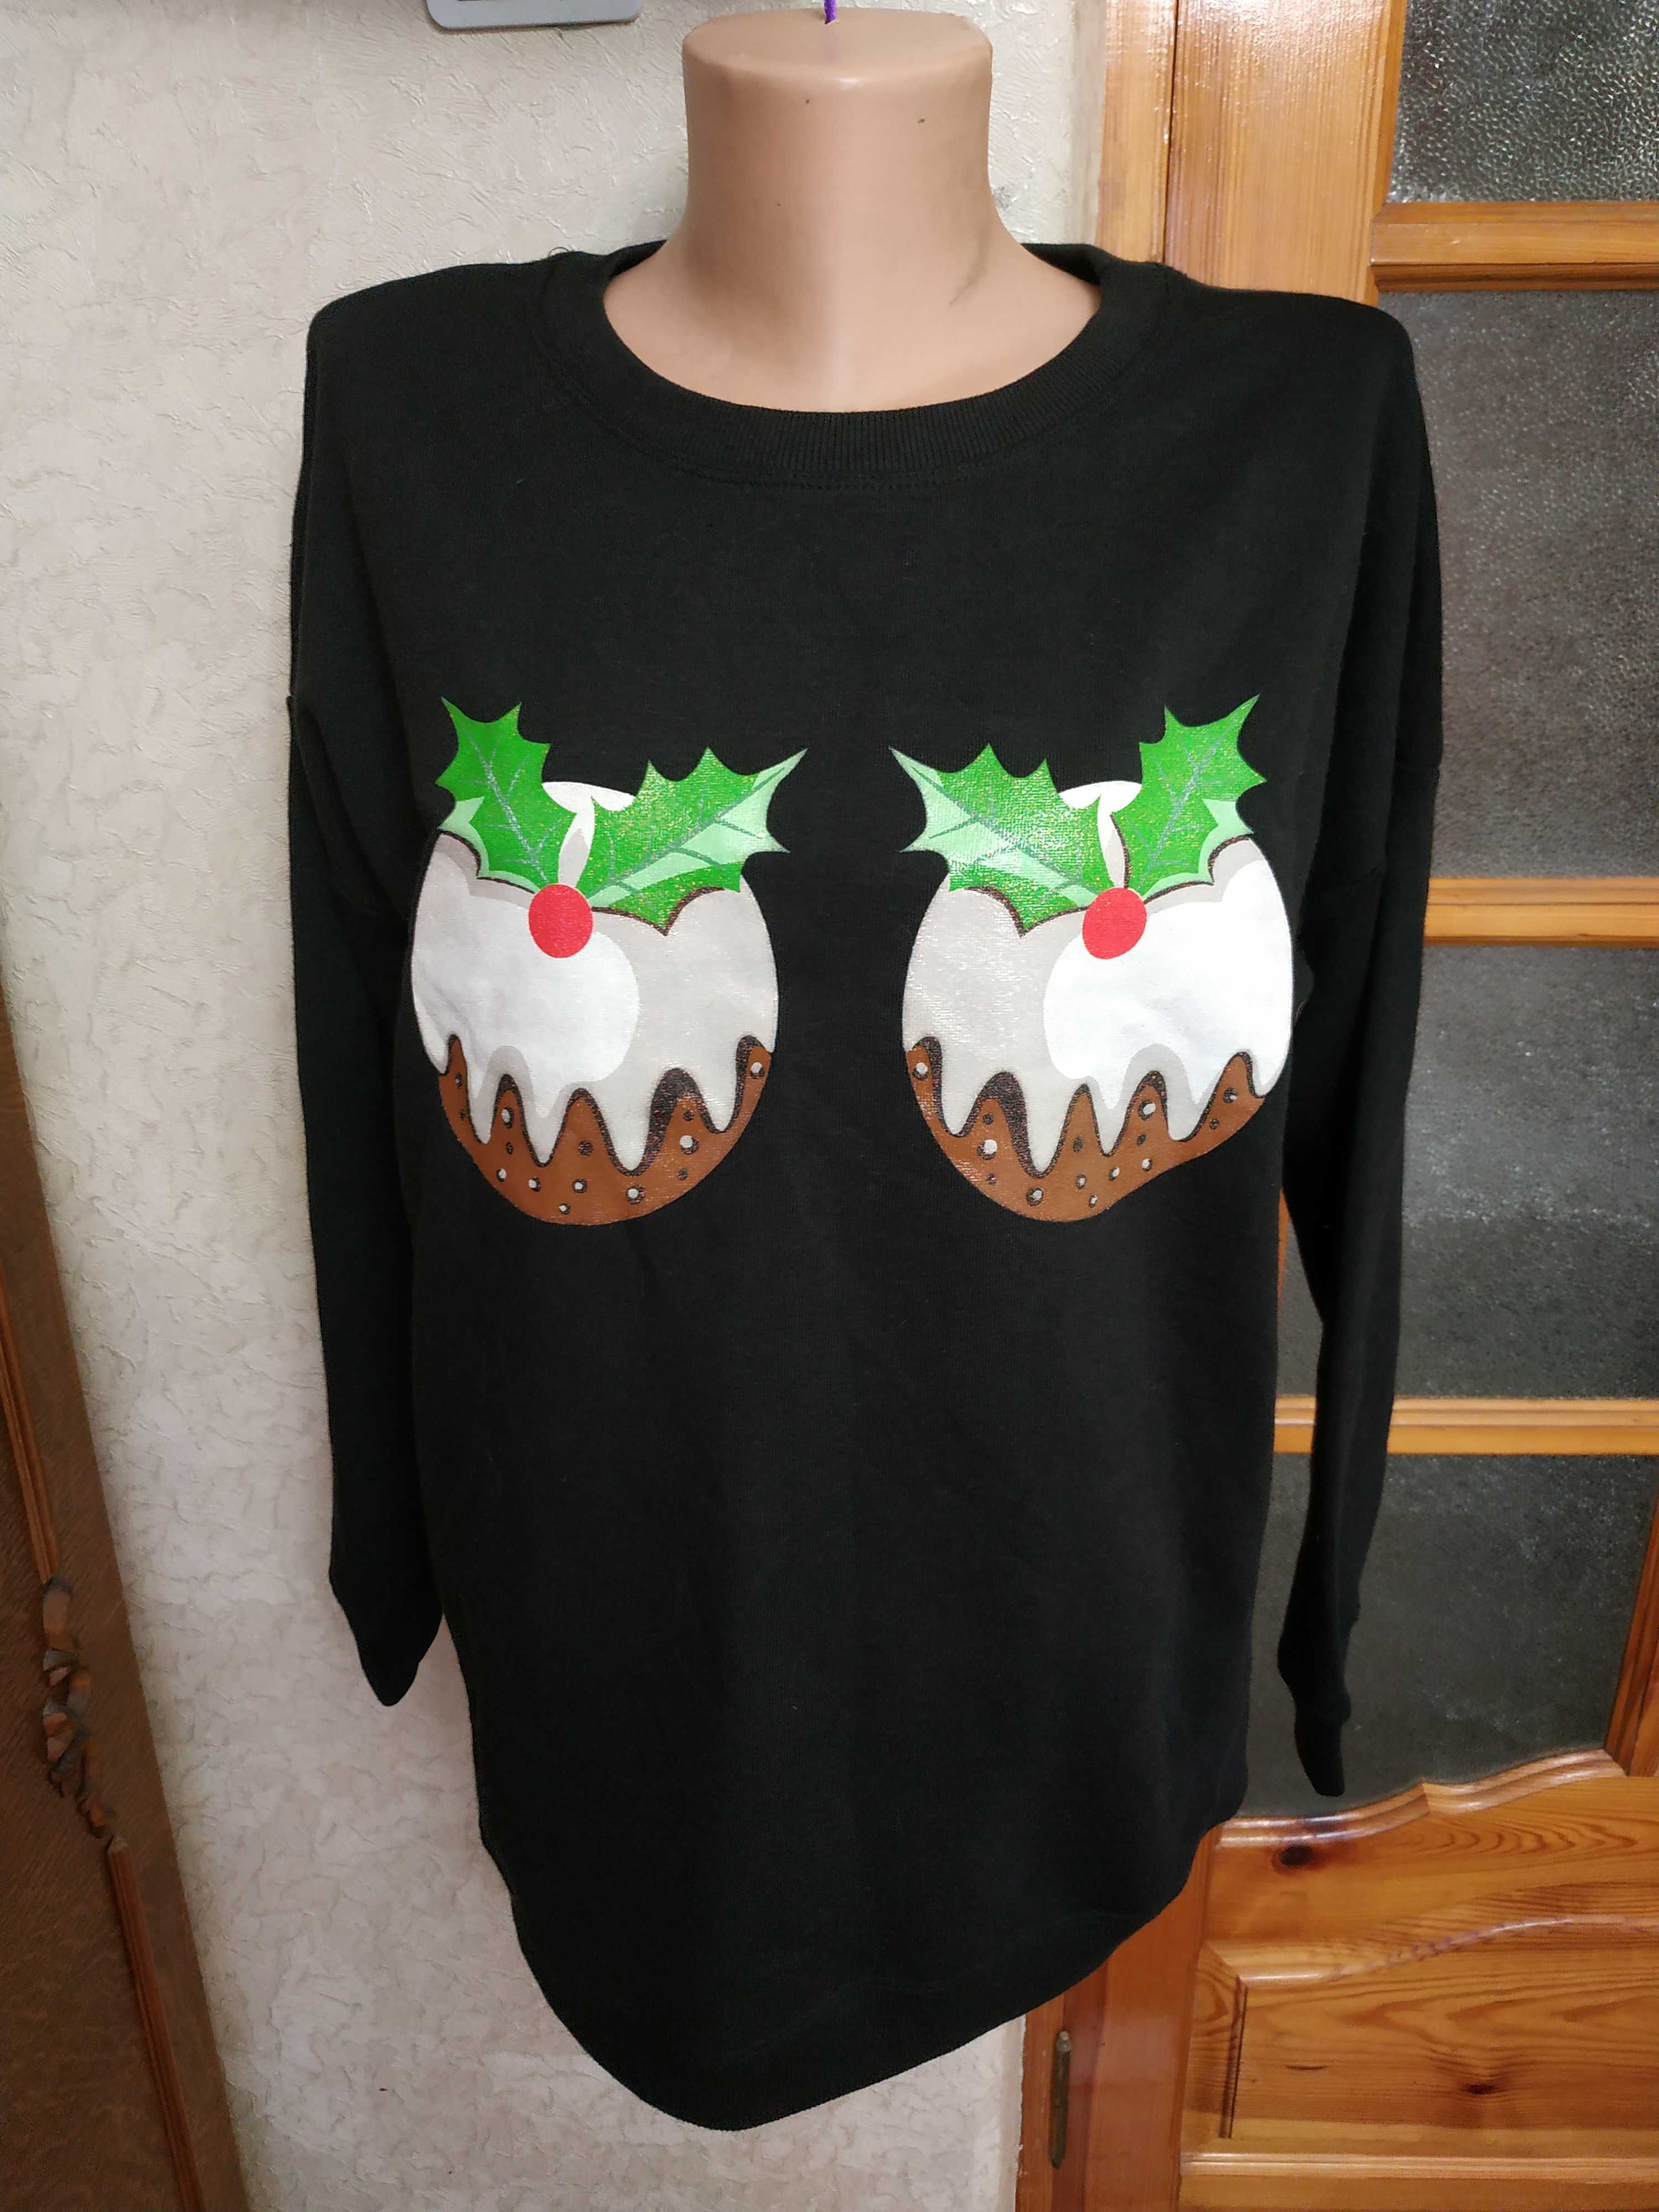 Новорічний светр від бренду New Look із різдвяними пудингами на грудях